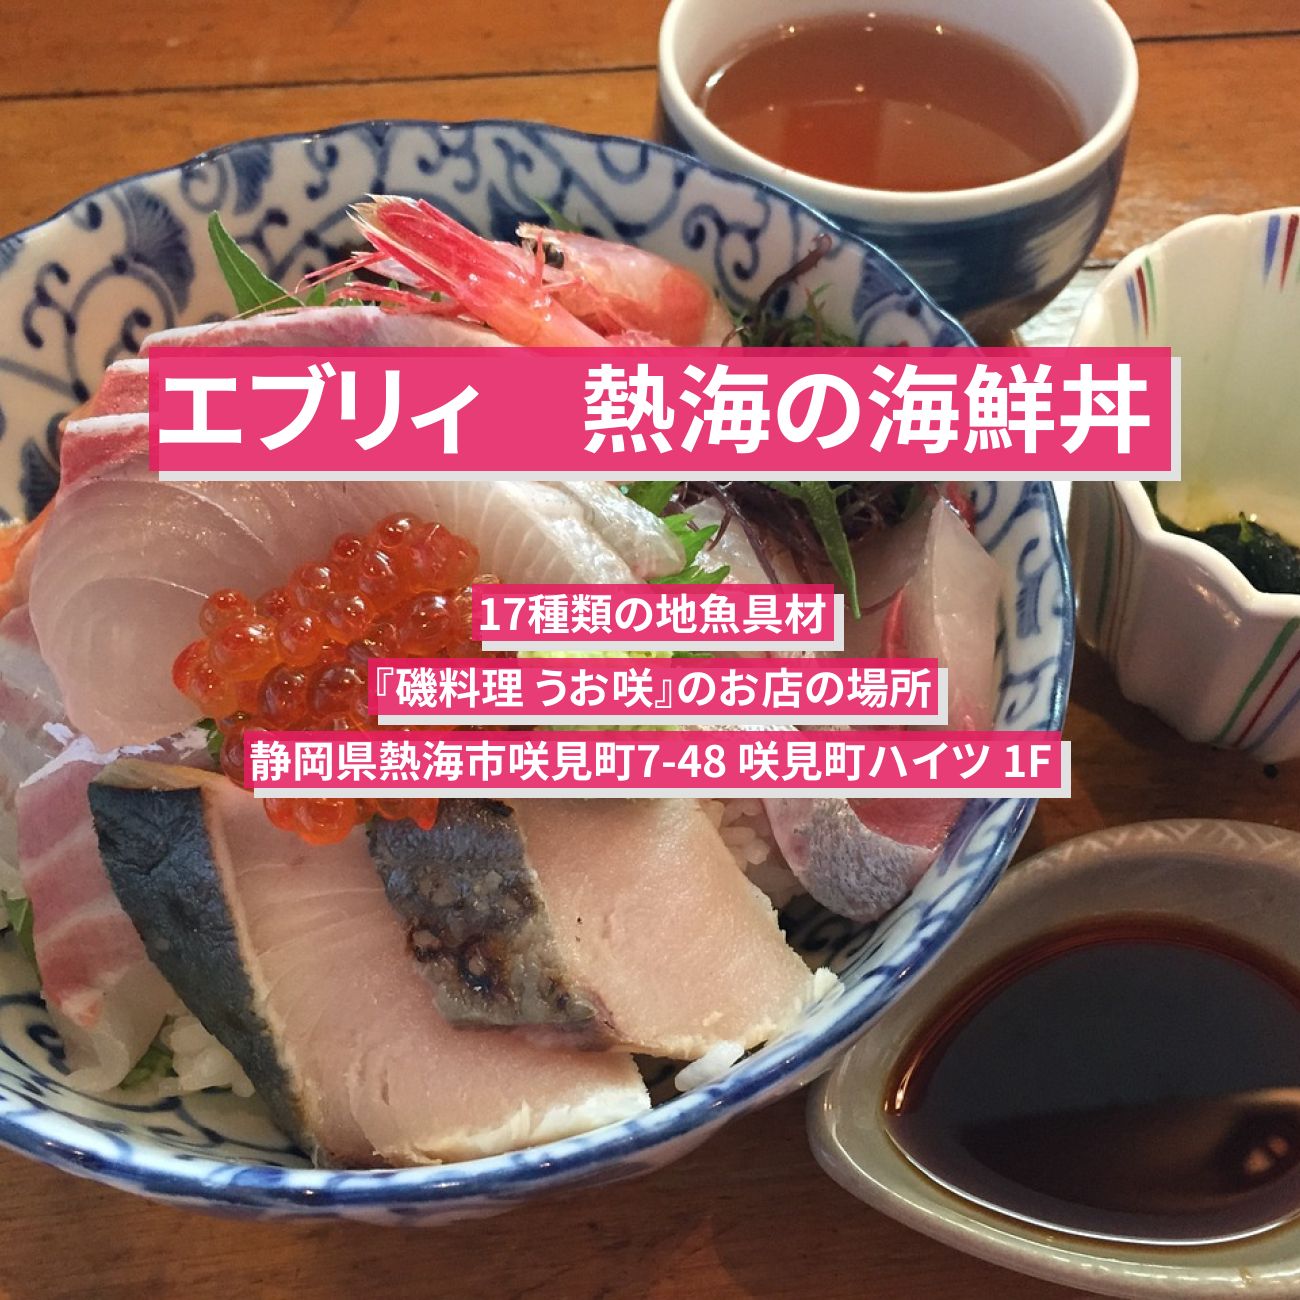 【エブリィ】海鮮丼（17種類の地魚具材）熱海『磯料理 うお咲』のお店の場所〔every〕